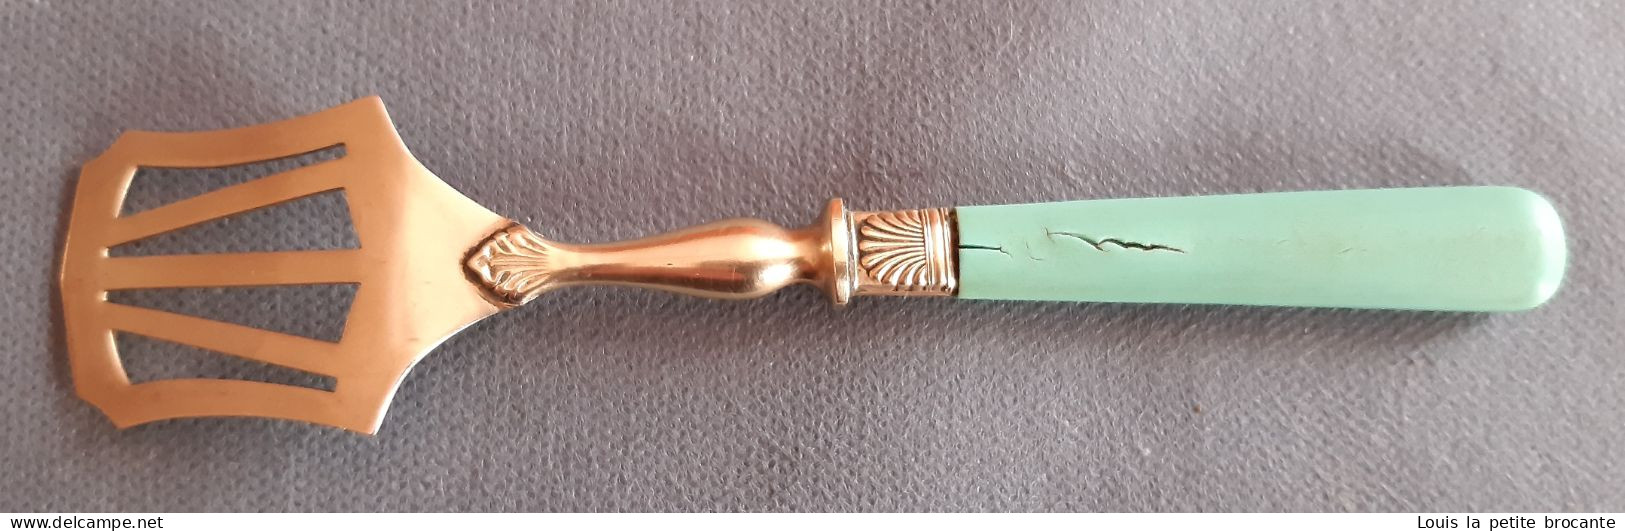 Joli service à mignardises début XXème siècle, 1 couteau, une fourchette, une cuillère et une pèle.